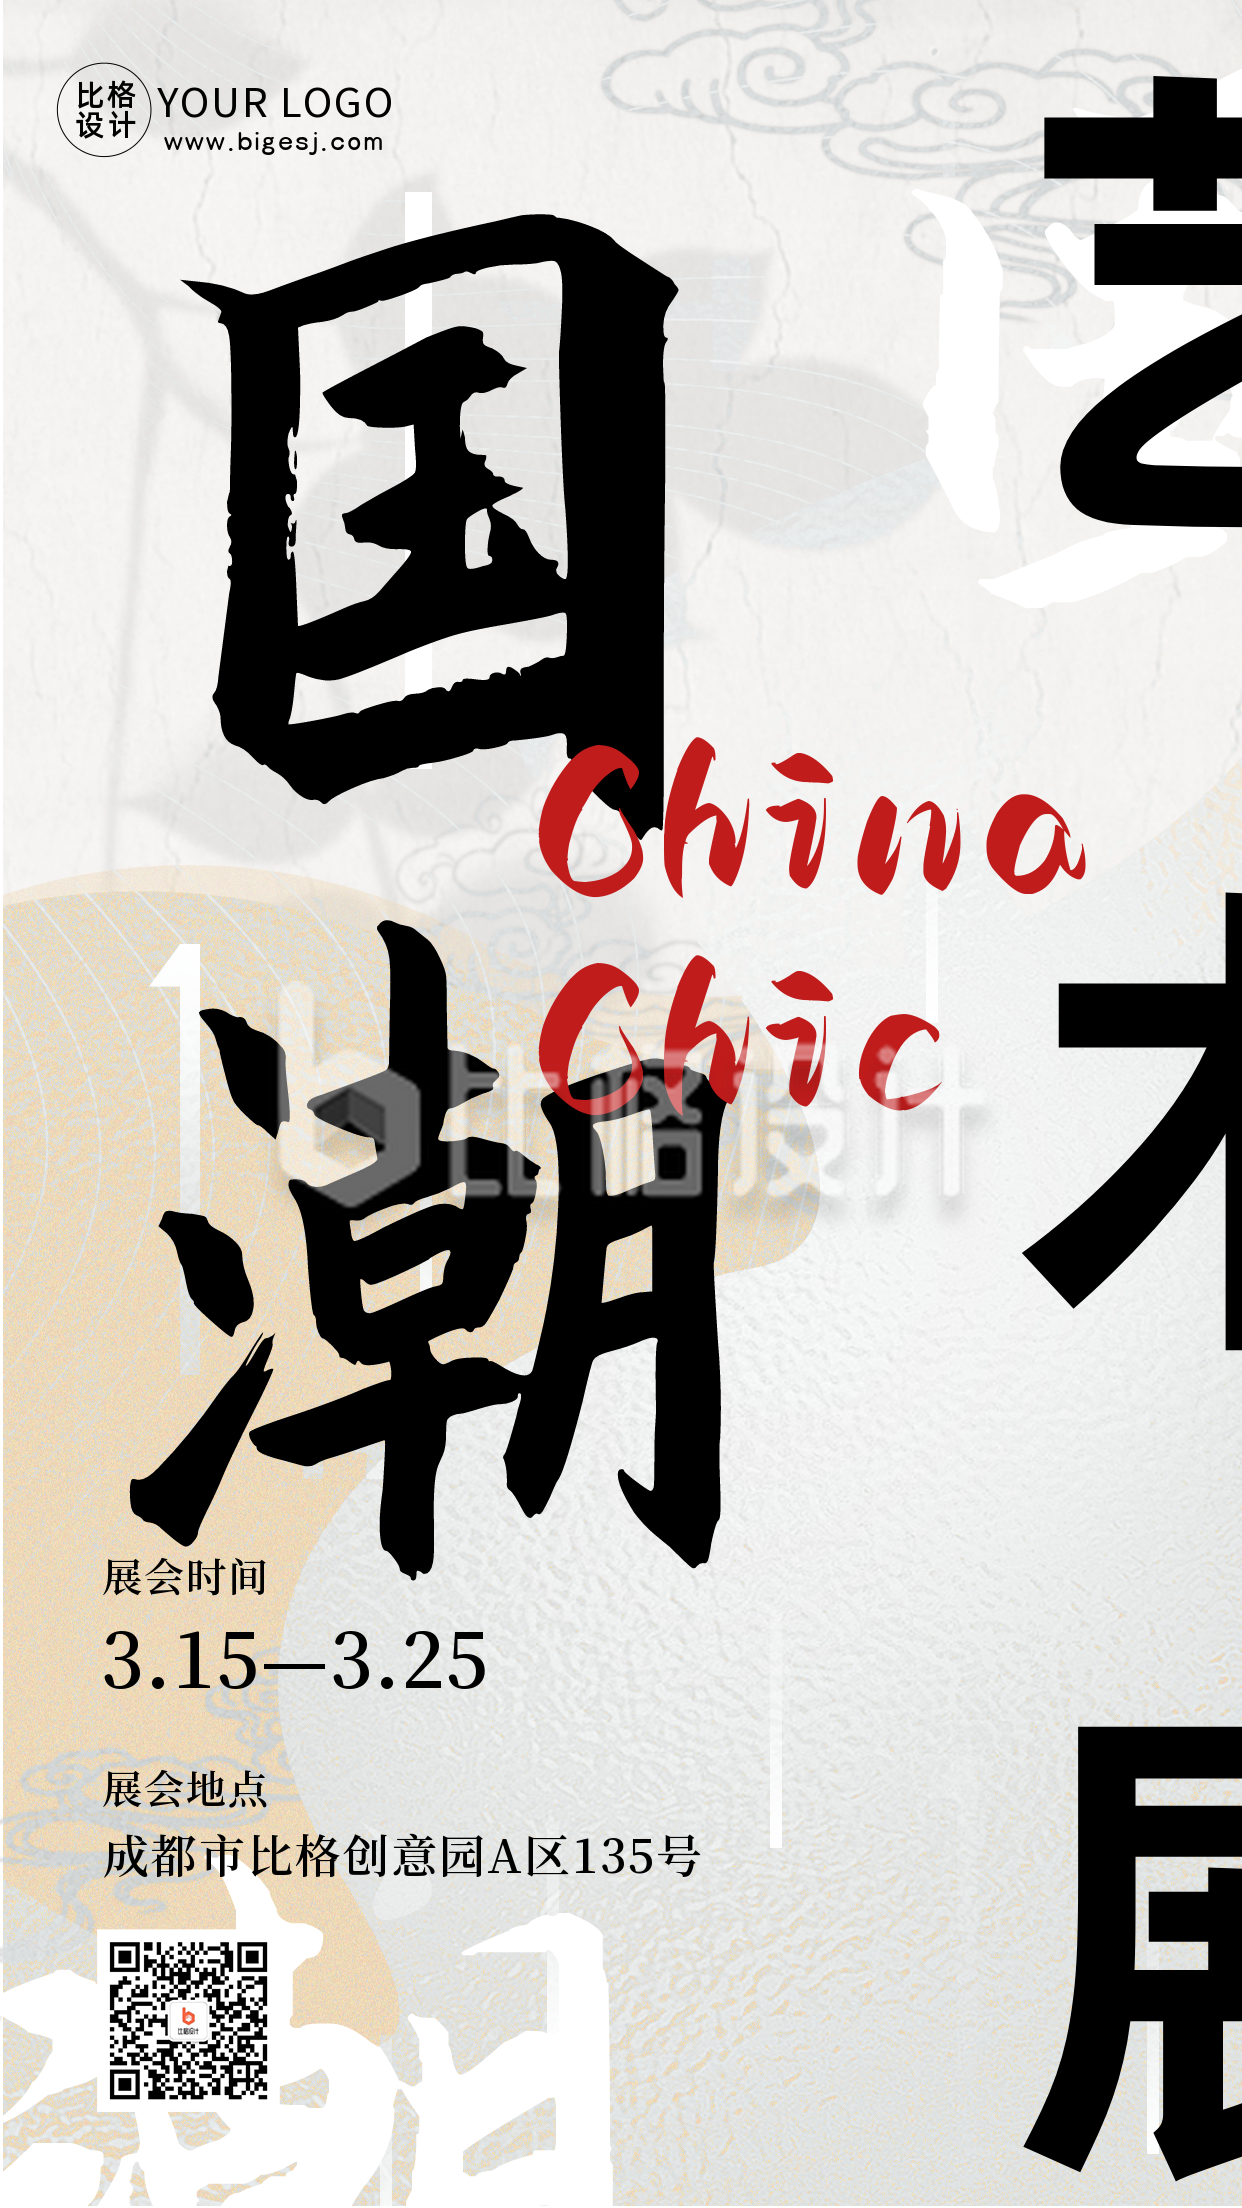 国潮中国风艺术展巡展市集活动宣传手机海报